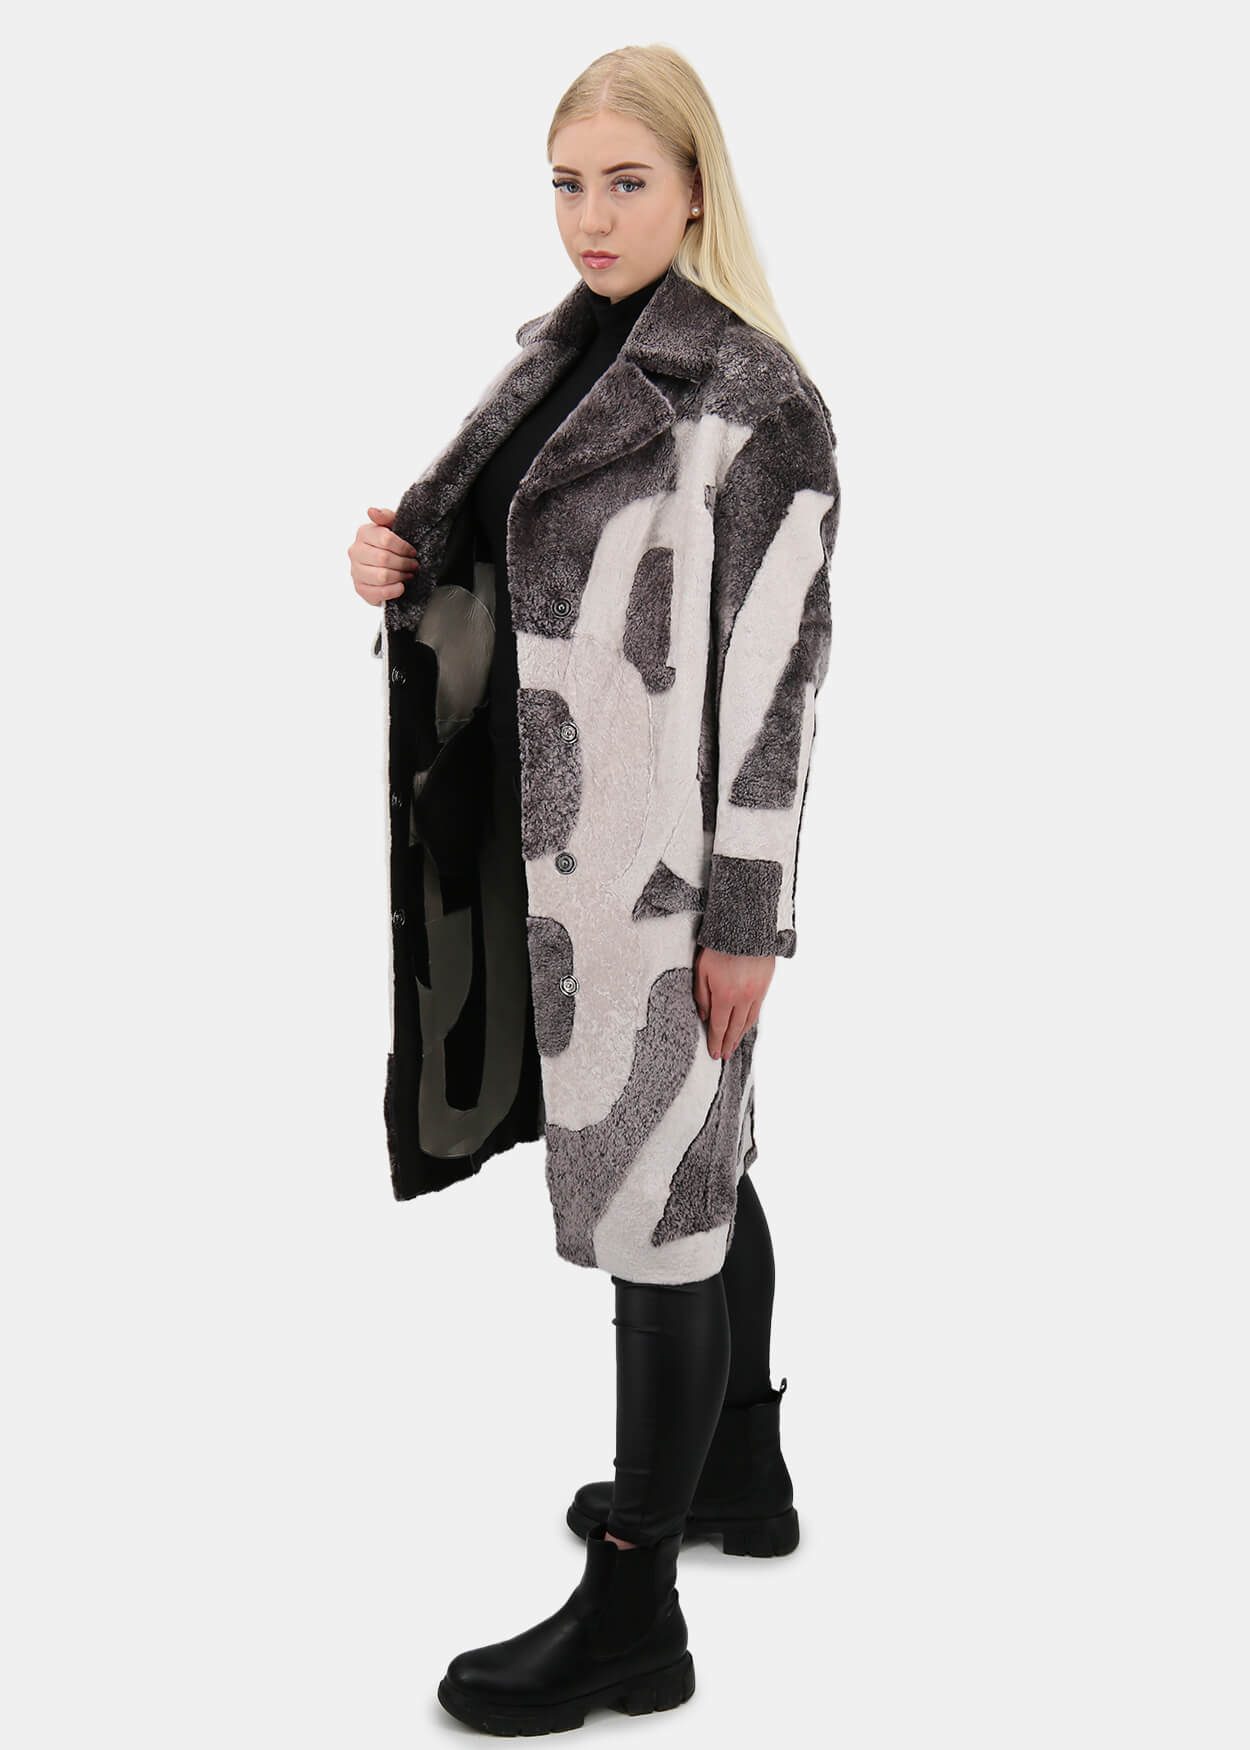 Płaszcz kożuchowy damski Shearling z jagnięcej skóry - ED-03 Brązowy